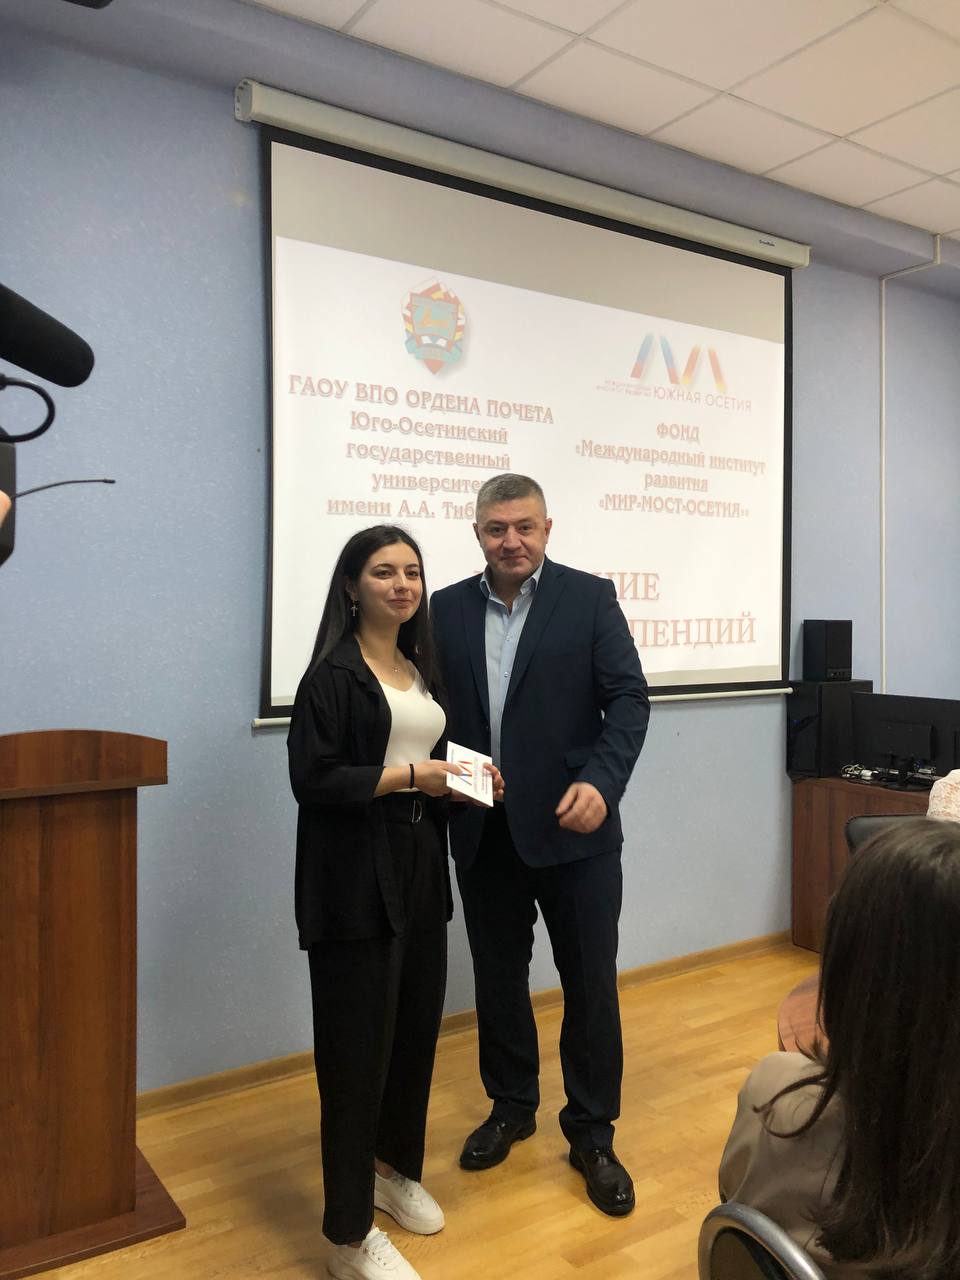 НИИРК – В Юго-Осетинском государственном университете состоялось вручение именных стипендий Фонда «МИР – МОСТ – ОСЕТИЯ»